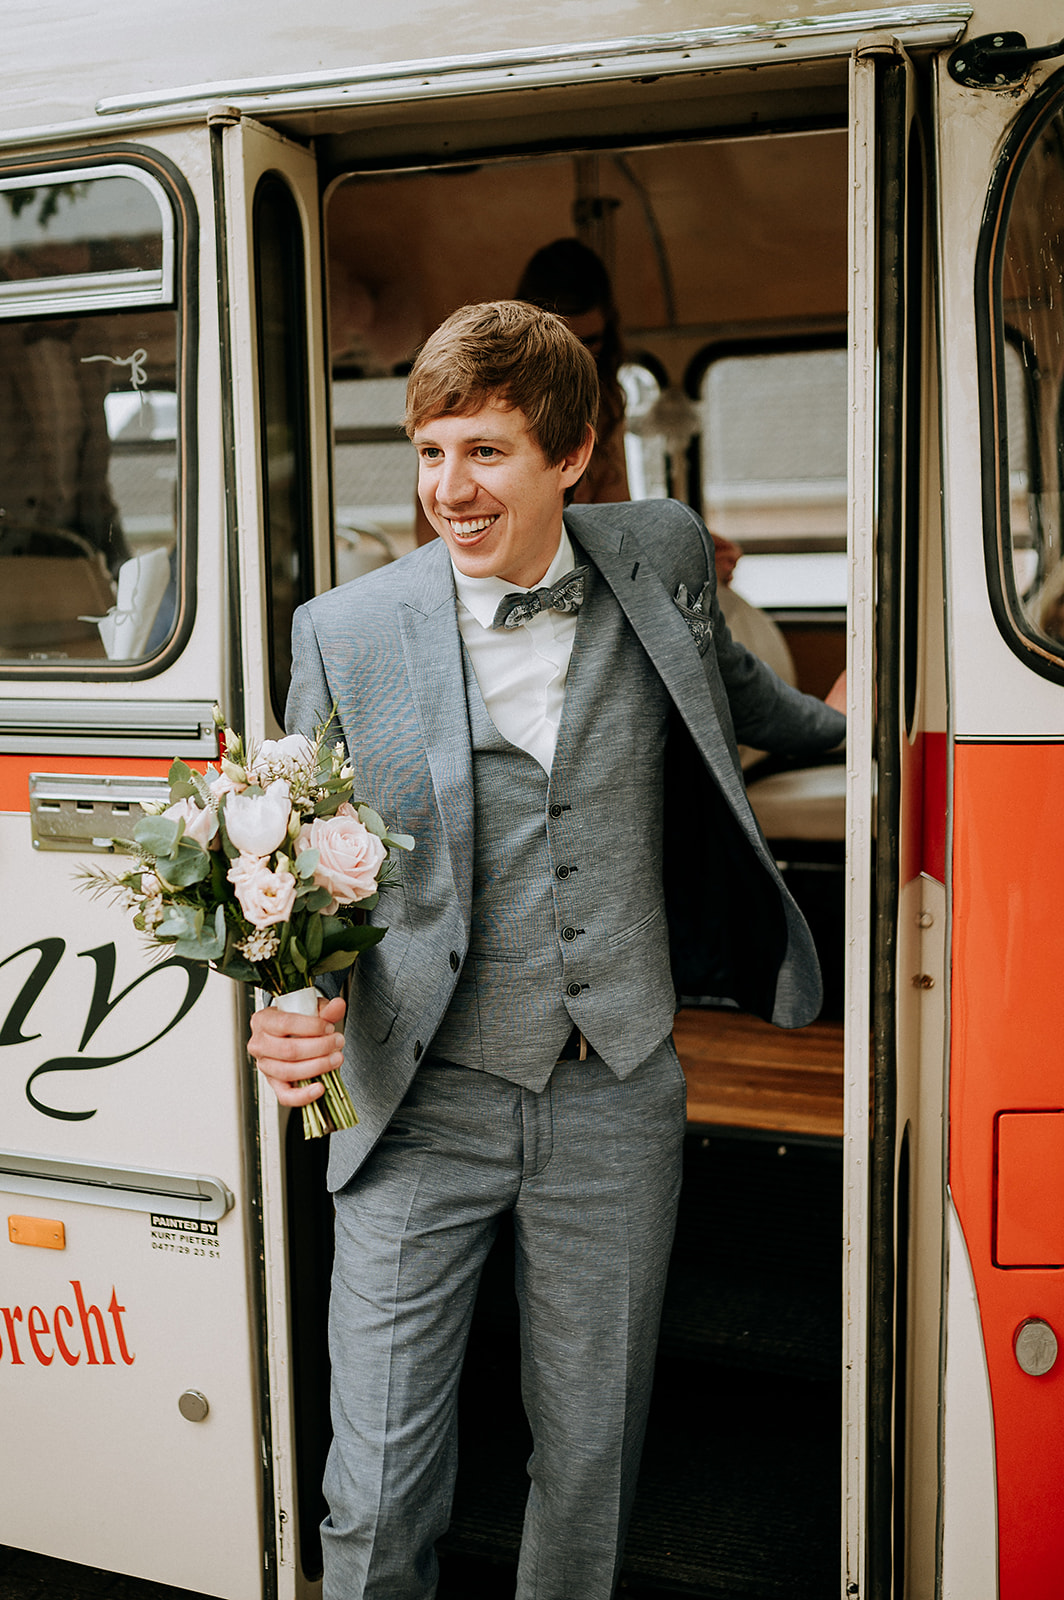 Bruidegom stapt met het bruidsboeket van de mooi versierde bus.